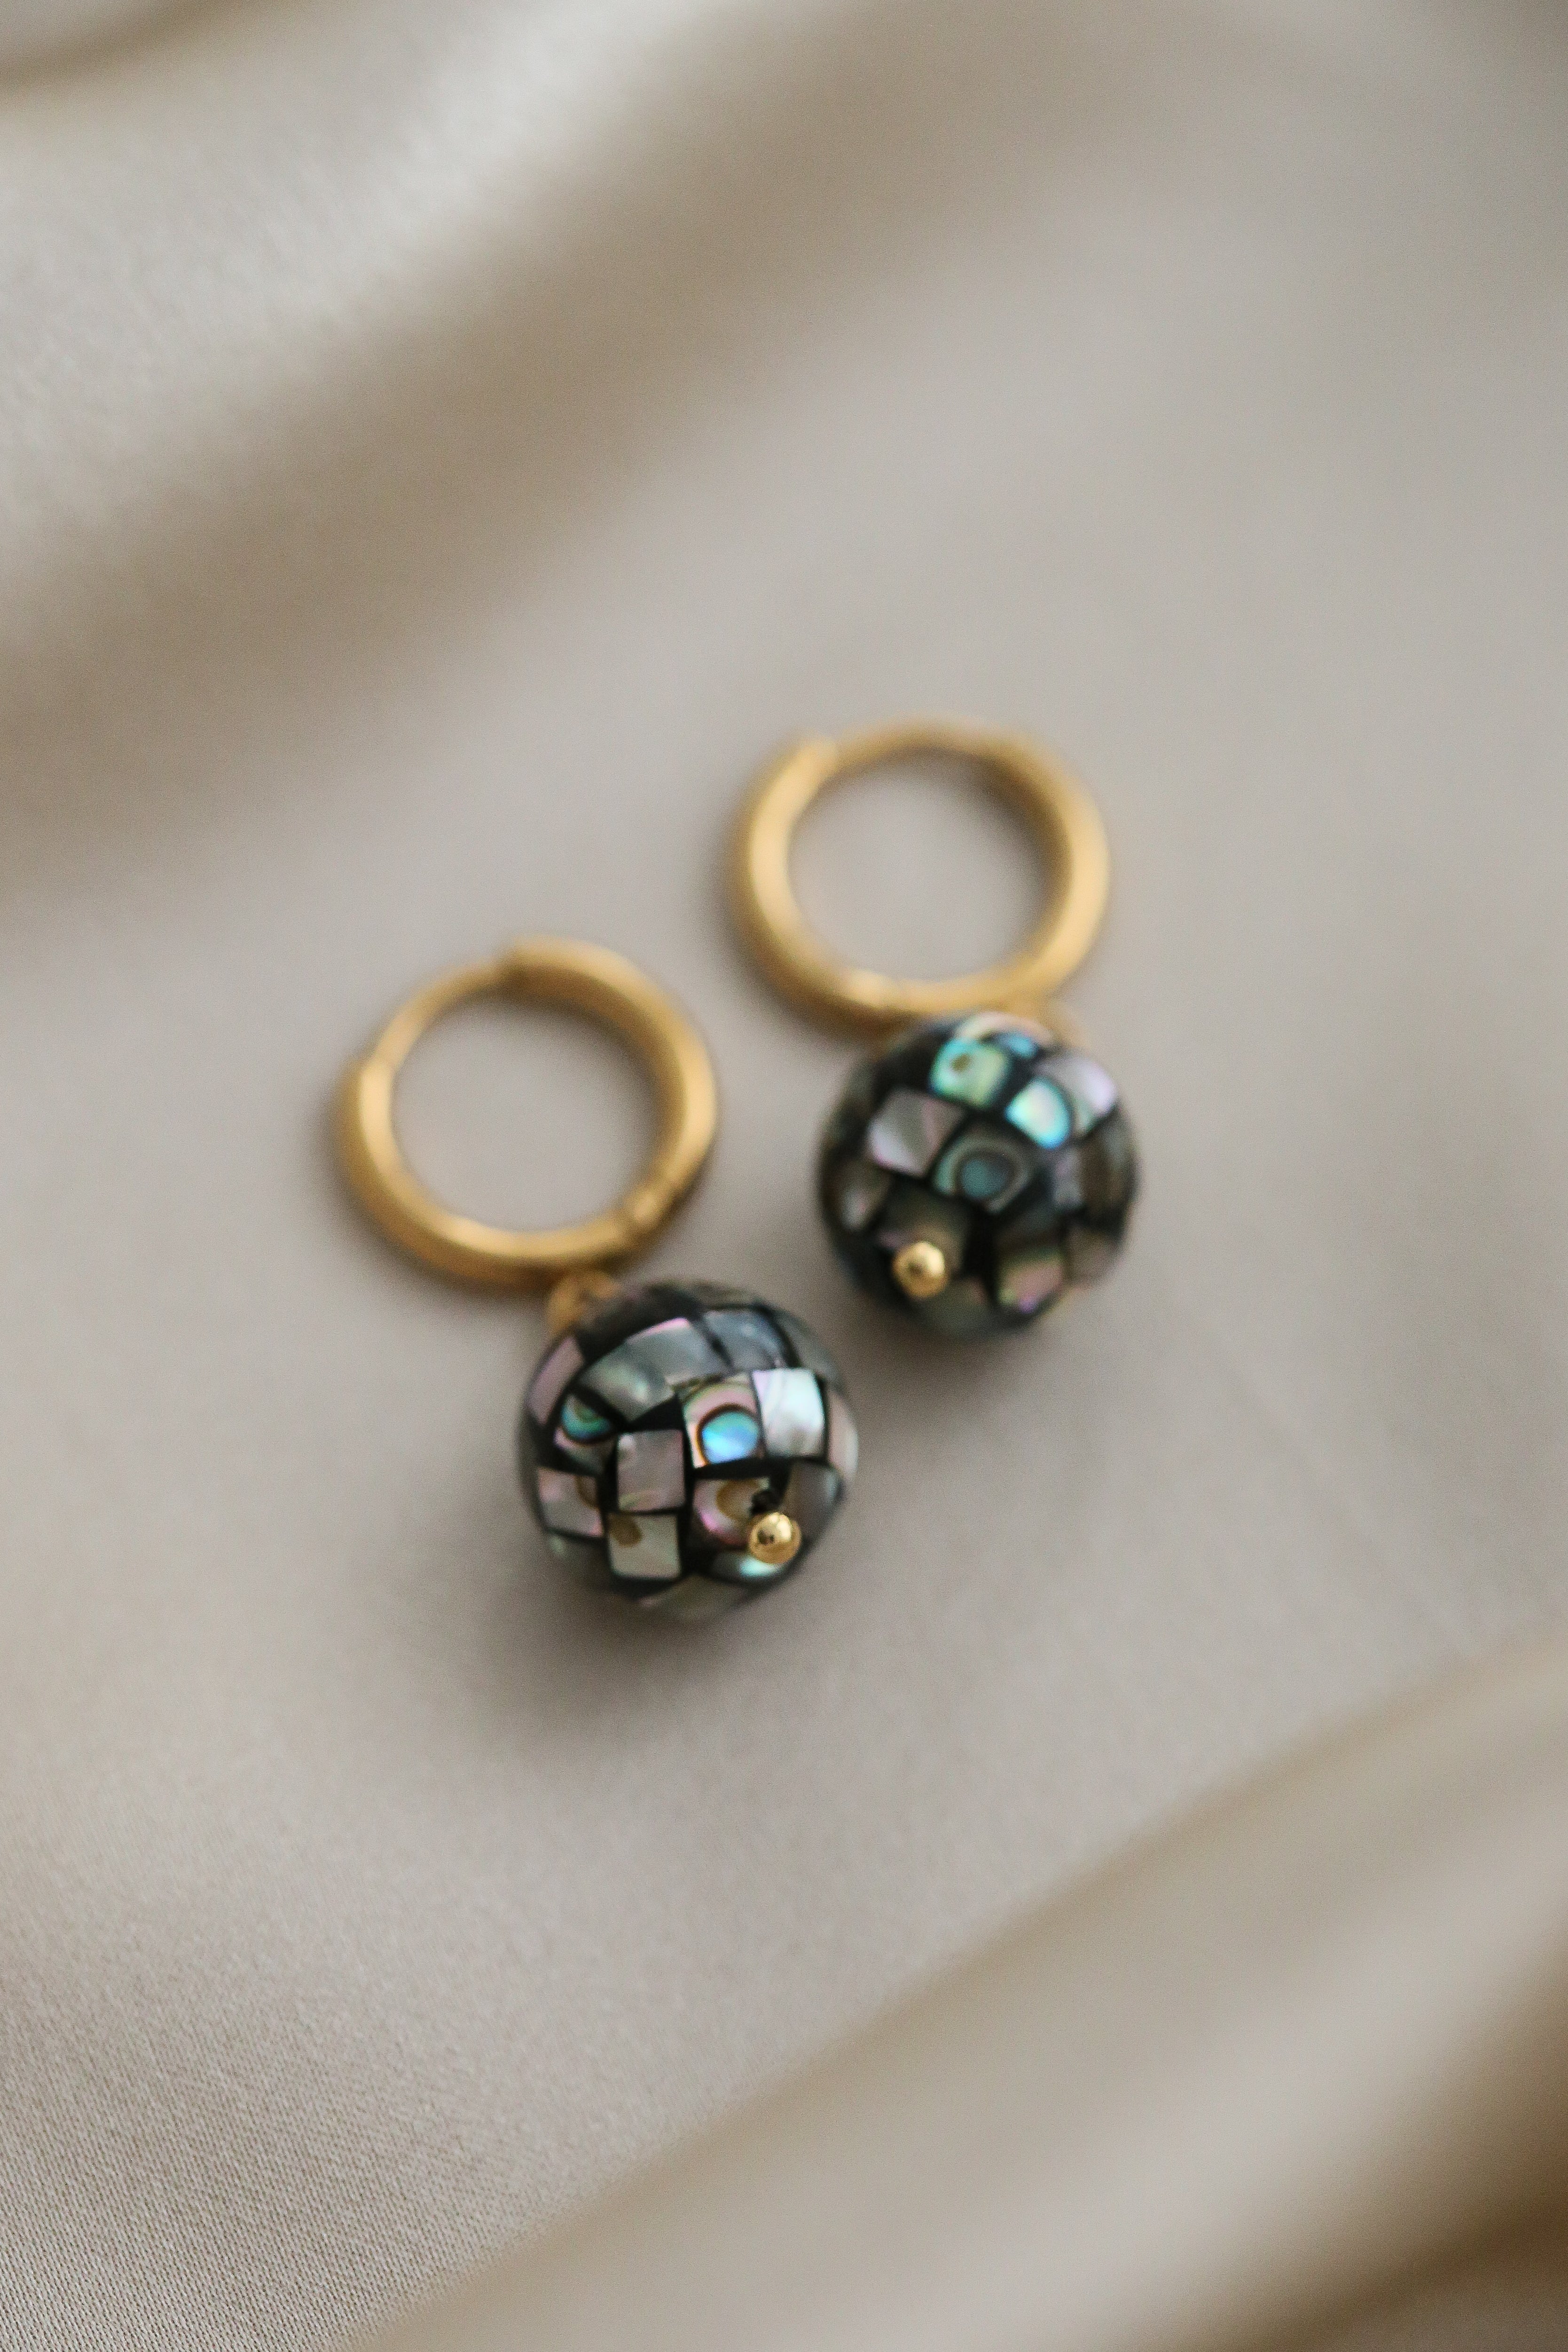 Kelsey Earrings - Boutique Minimaliste has waterproof, durable, elegant and vintage inspired jewelry